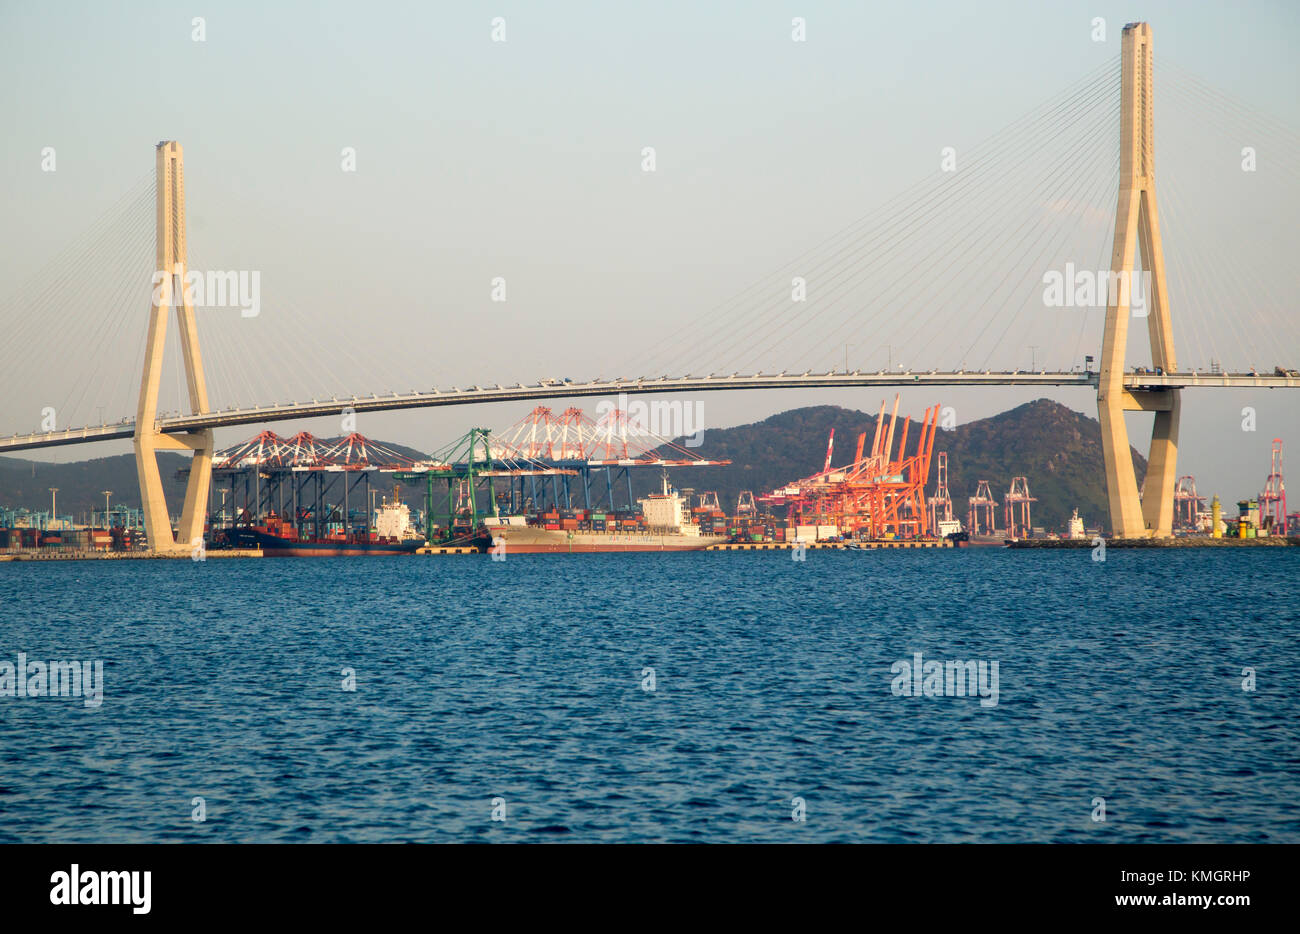 Le pont du port de Busan et port de Busan, nov 15, 2017 : le pont du port de Busan et le port de Busan Busan port nord () sont considérés à Busan, à environ 420 km (261 milles) au sud-est de Séoul, Corée du Sud. Le port de Busan est le plus grand port de la Corée du Sud. crédit : lee Jae-won/aflo/Alamy live news Banque D'Images